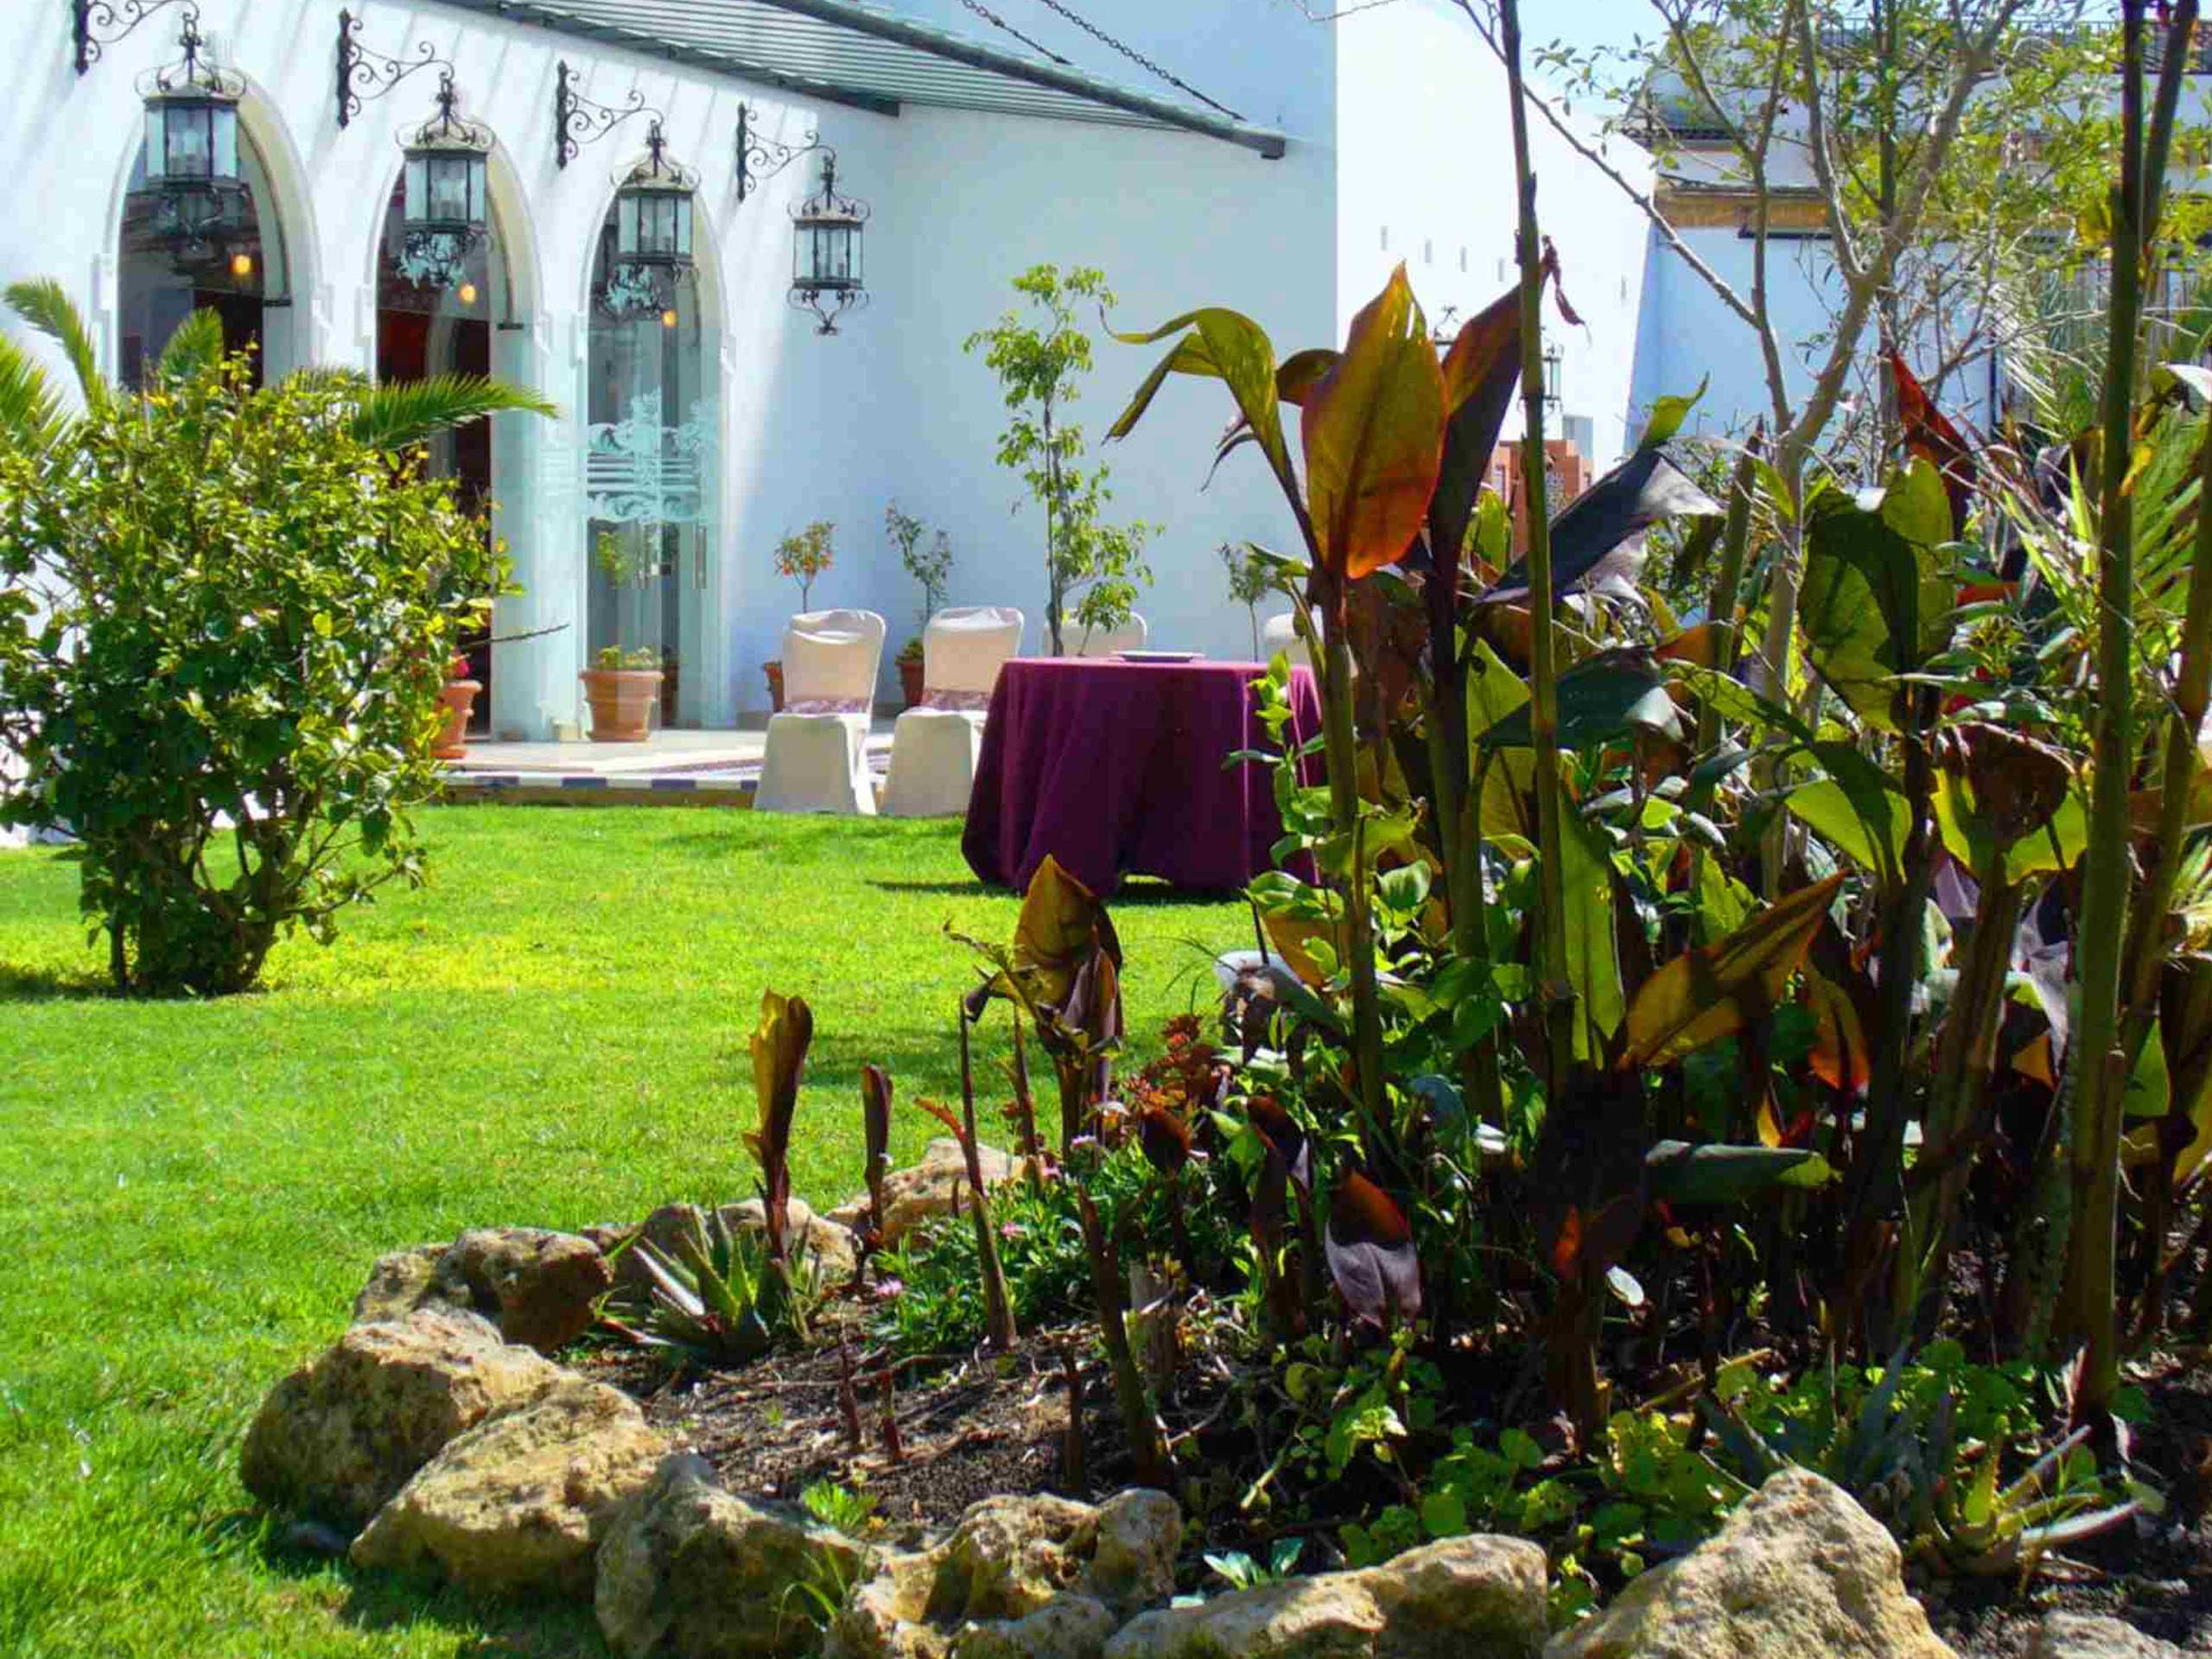 Jardines para eventos al aire libre en Bodegas Andrade. Zonas verdes con bonitas vistas rodeados de barricas de vino y viñedos